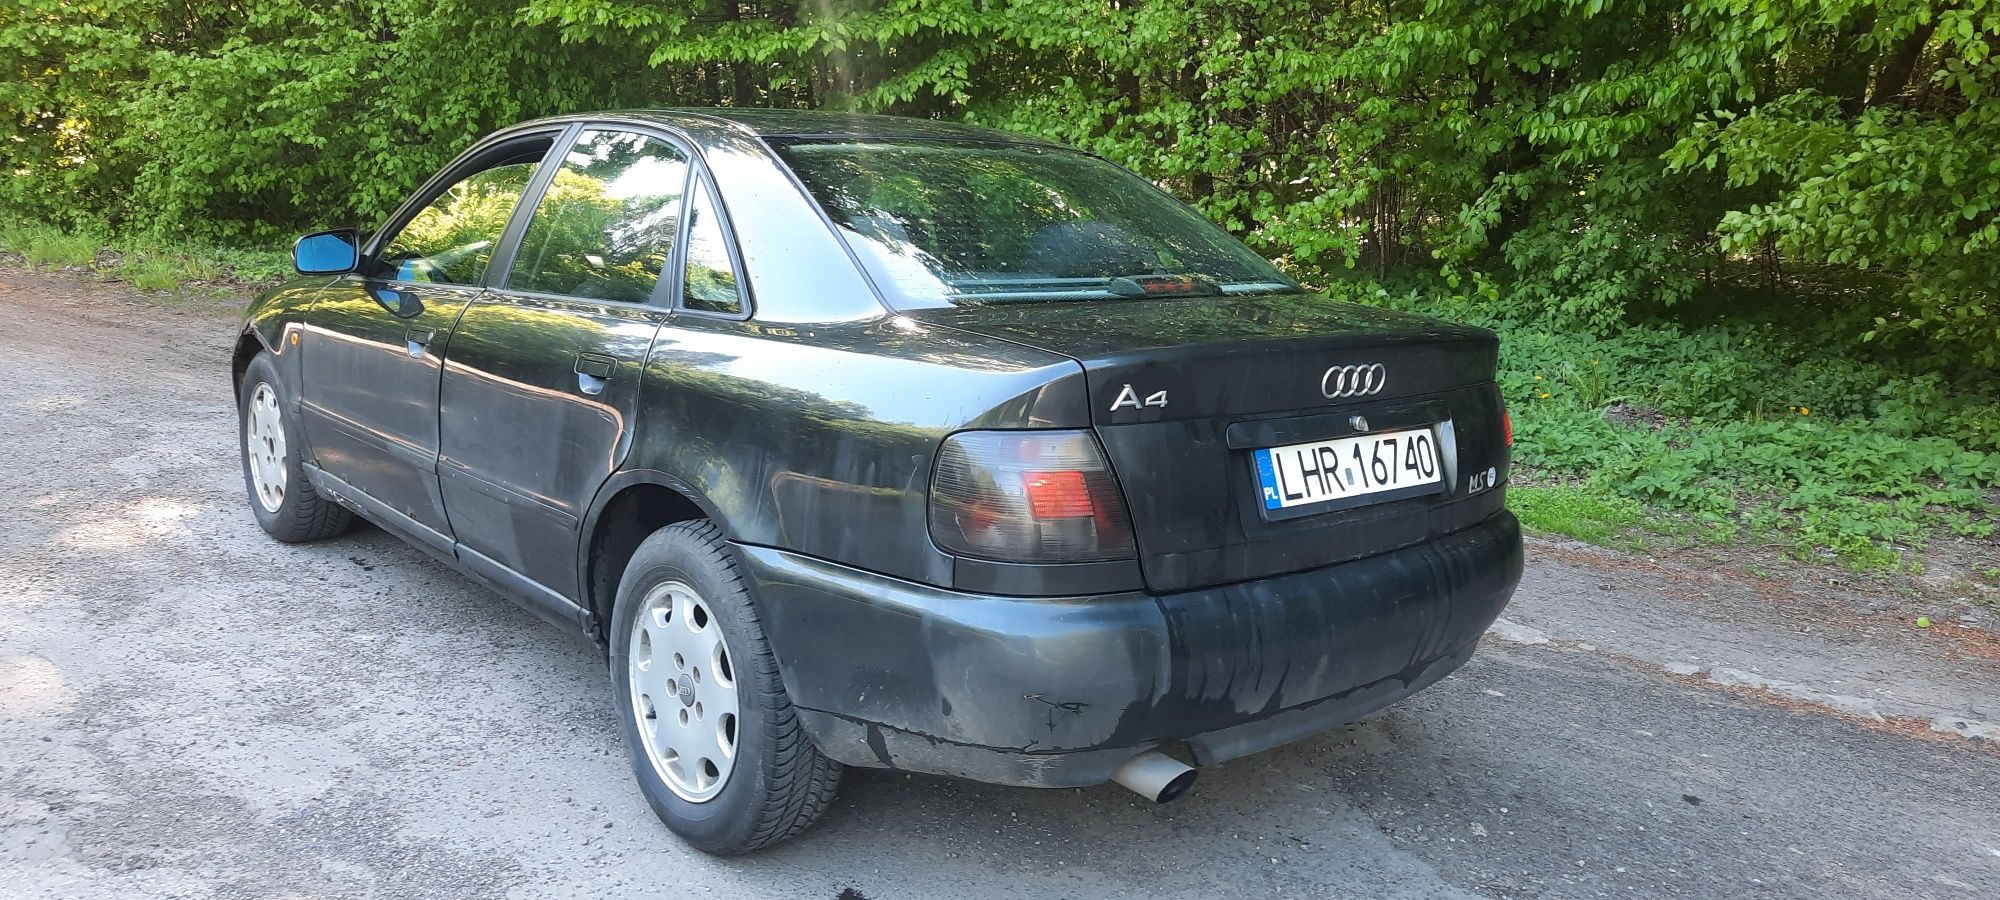 Audi a4 1.8 z gazem I opłatami